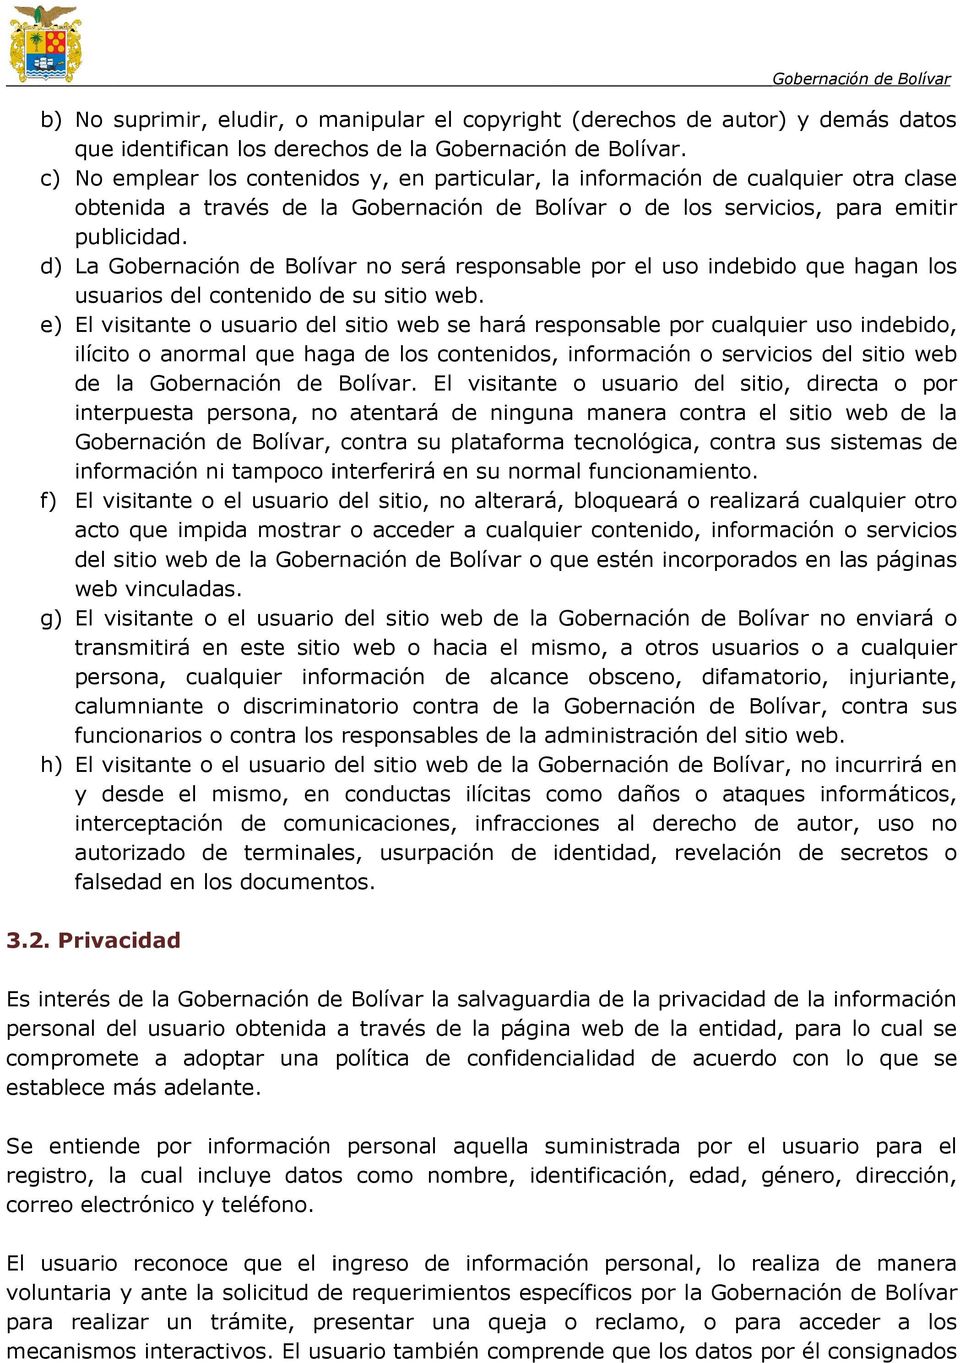 d) La Gobernación de Bolívar no será responsable por el uso indebido que hagan los usuarios del contenido de su sitio web.